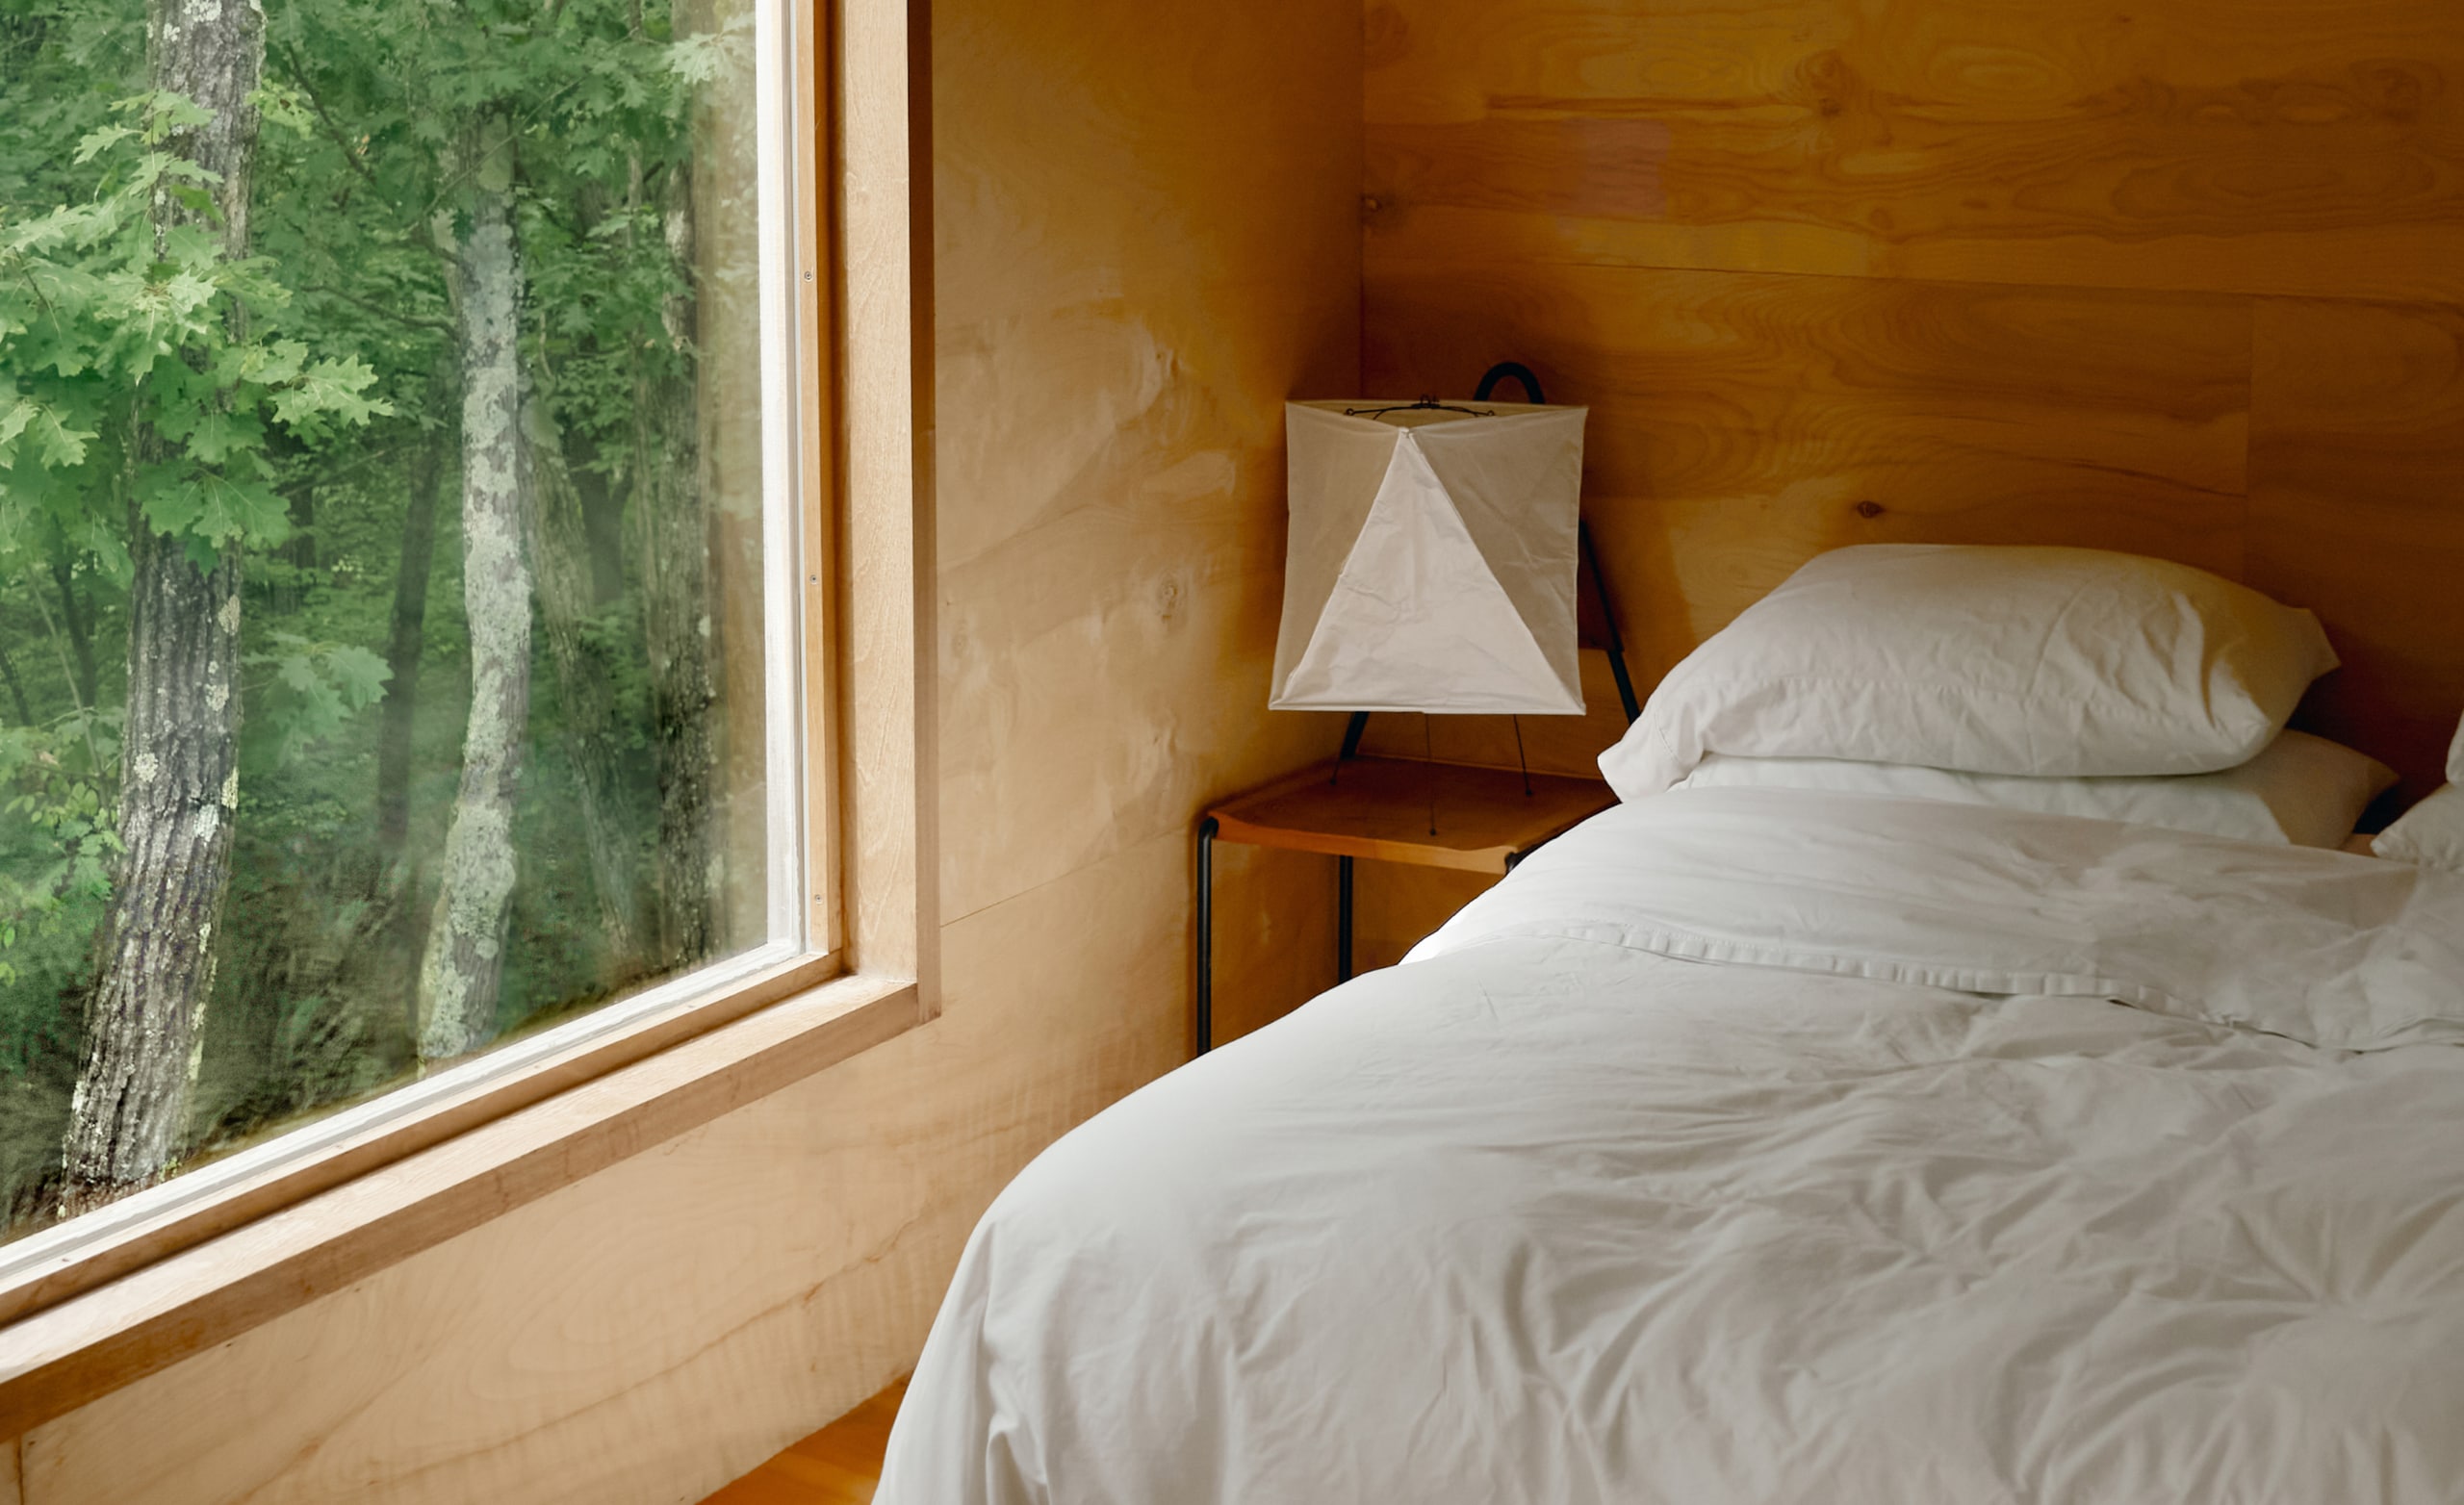 Um quarto com lençóis brancos em uma cama recém-feita, e uma janela grande mostrando árvores do lado de fora.